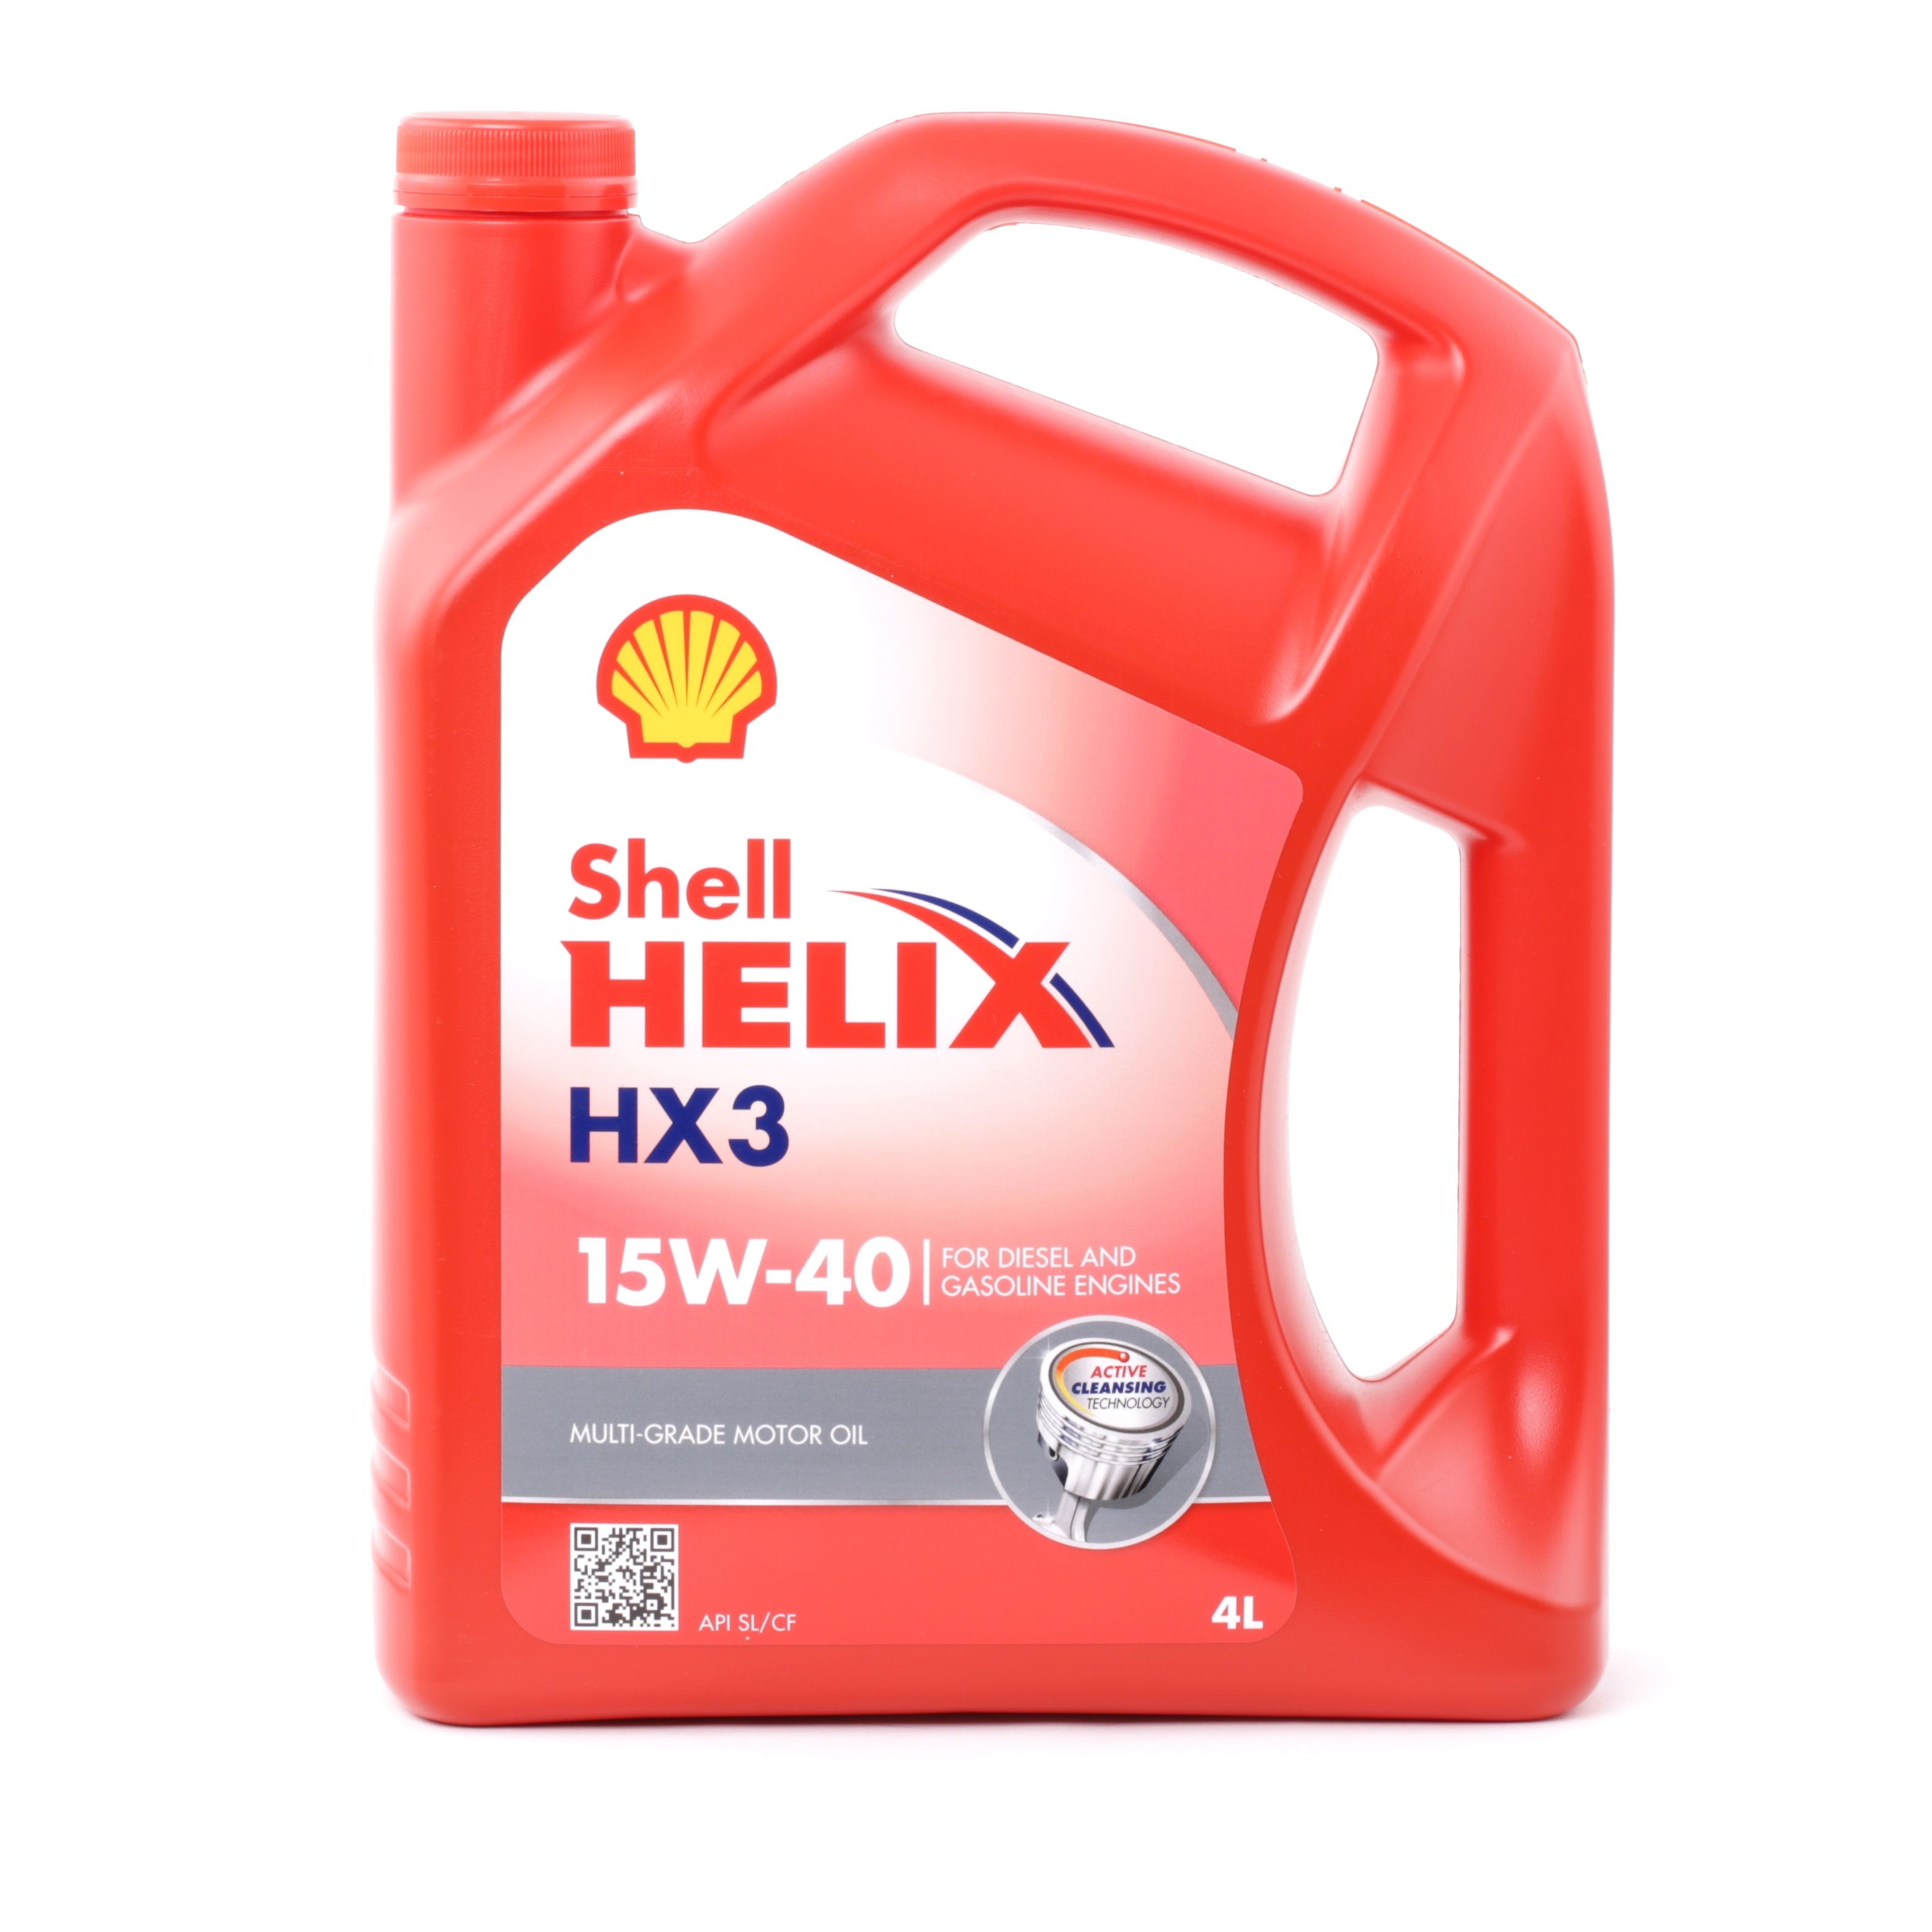 Car oil 15W-40 longlife diesel - 550039926 SHELL Helix, HX3